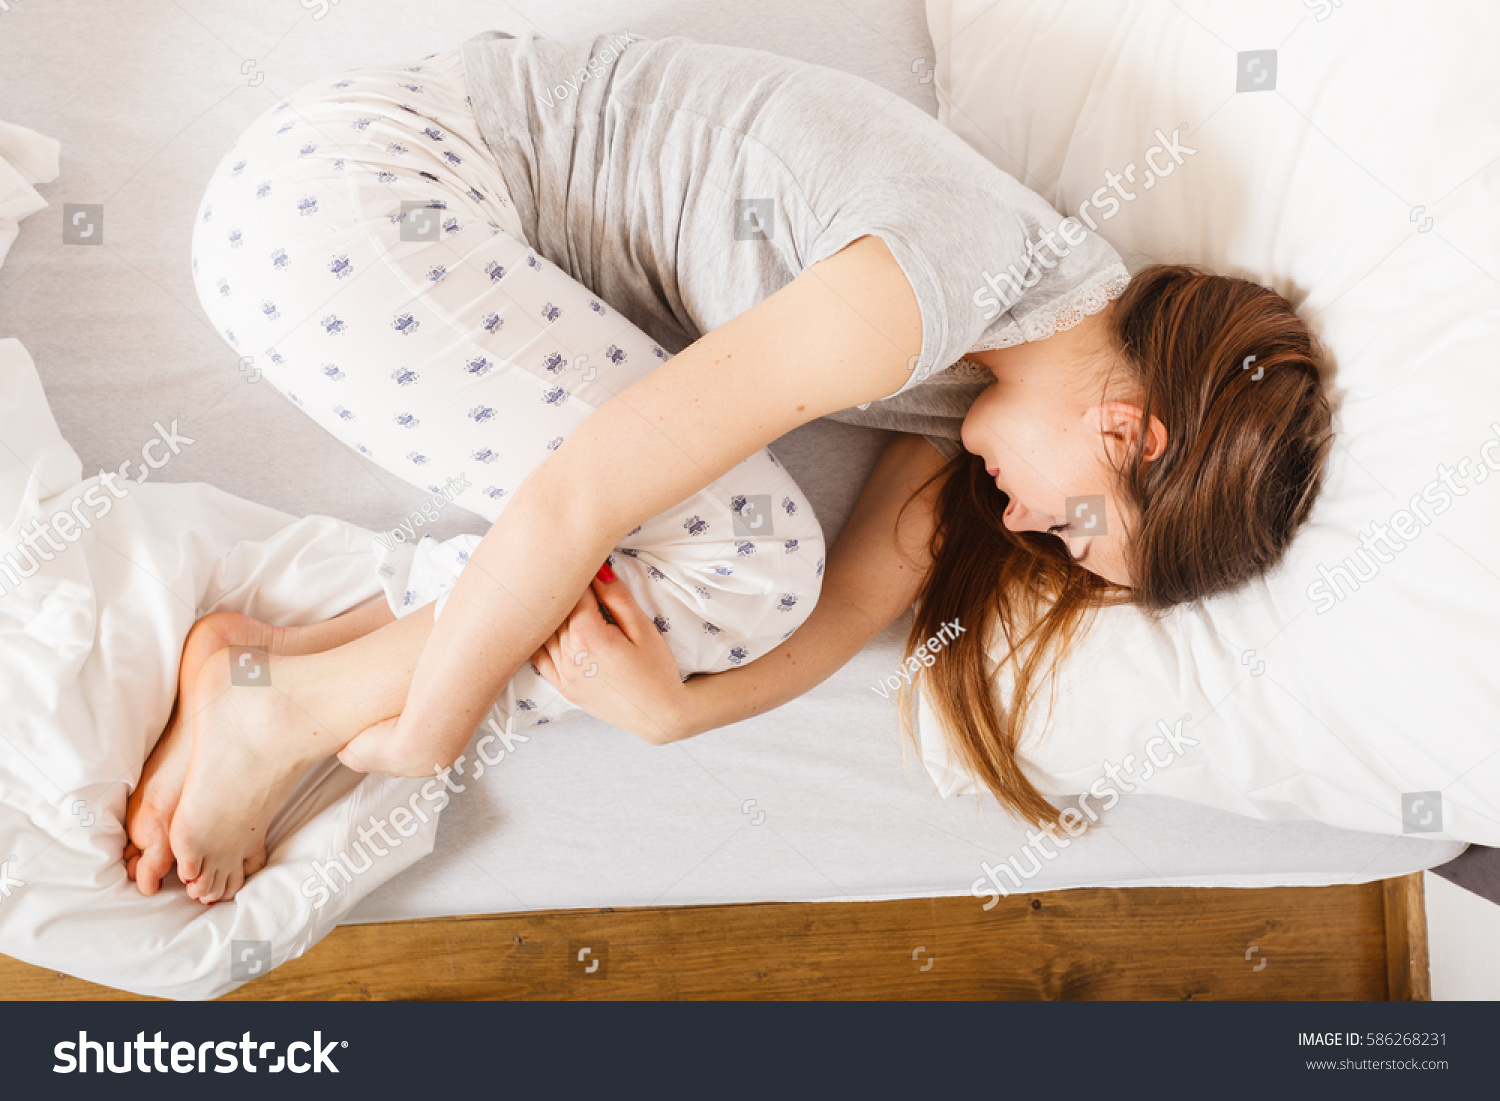 Спать поджав ноги. Девушка свернулась клубком. Лежать клубочком. Поза эмбриона во сне.